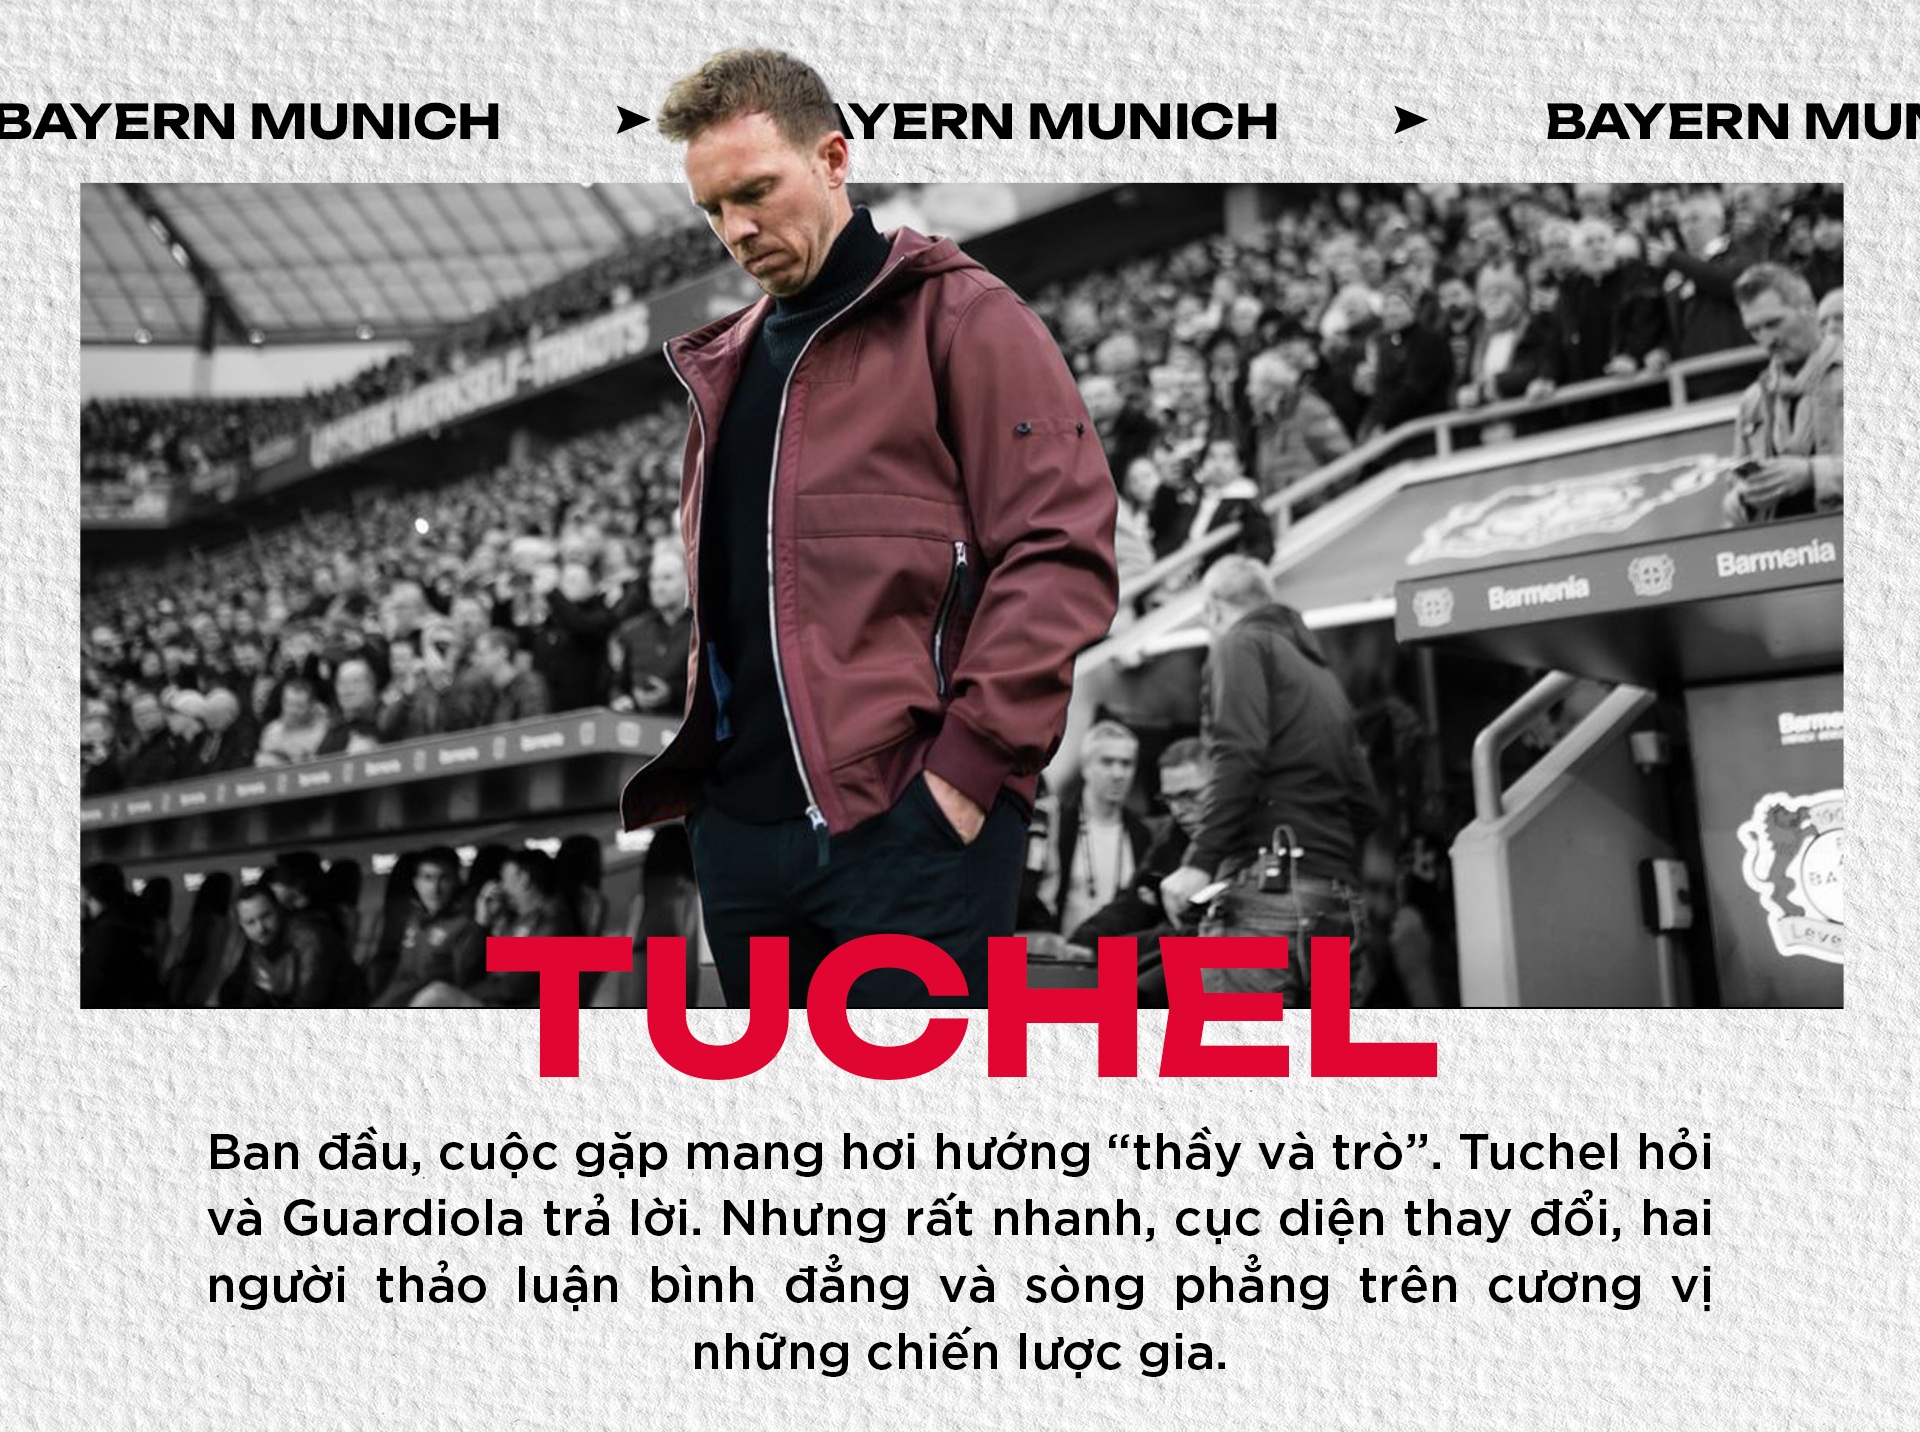 Tuchel đối đầu Guardiola: Đấu trí đỉnh cao bắt đầu từ lọ muối và hũ tiêu - 19